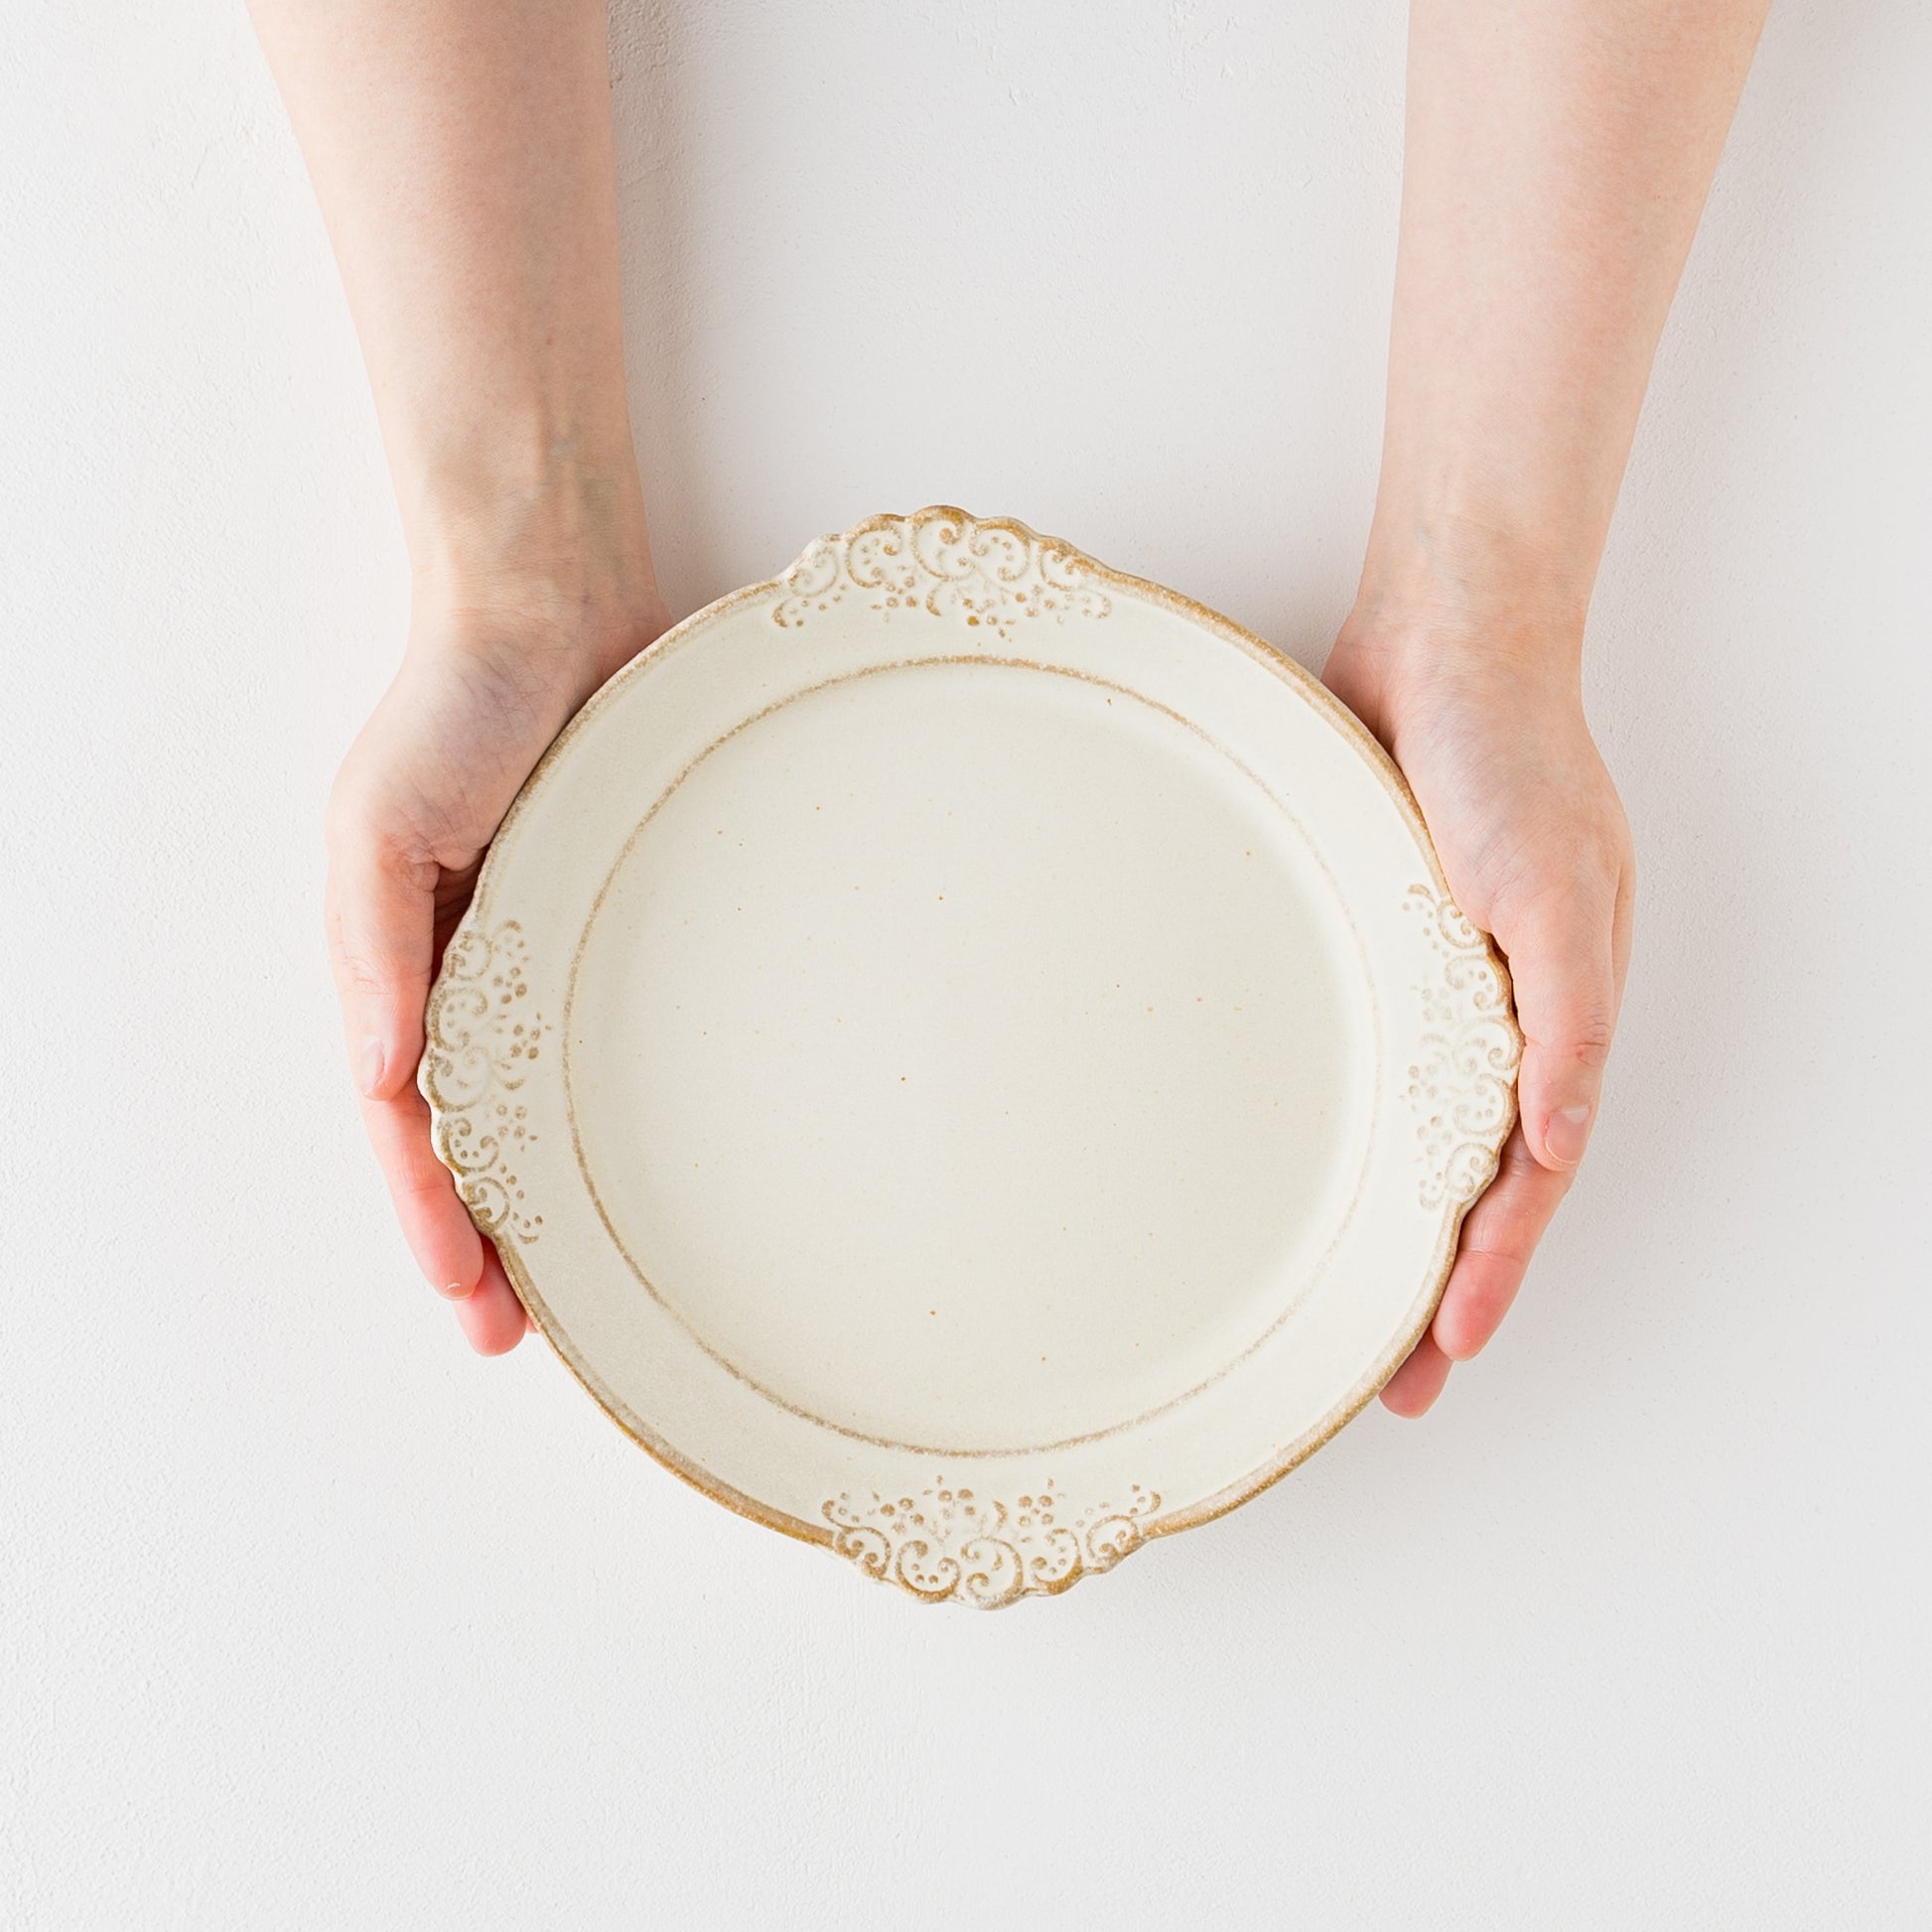 カフェめしの雰囲気を味わえるわかさま陶芸の生成りの中皿